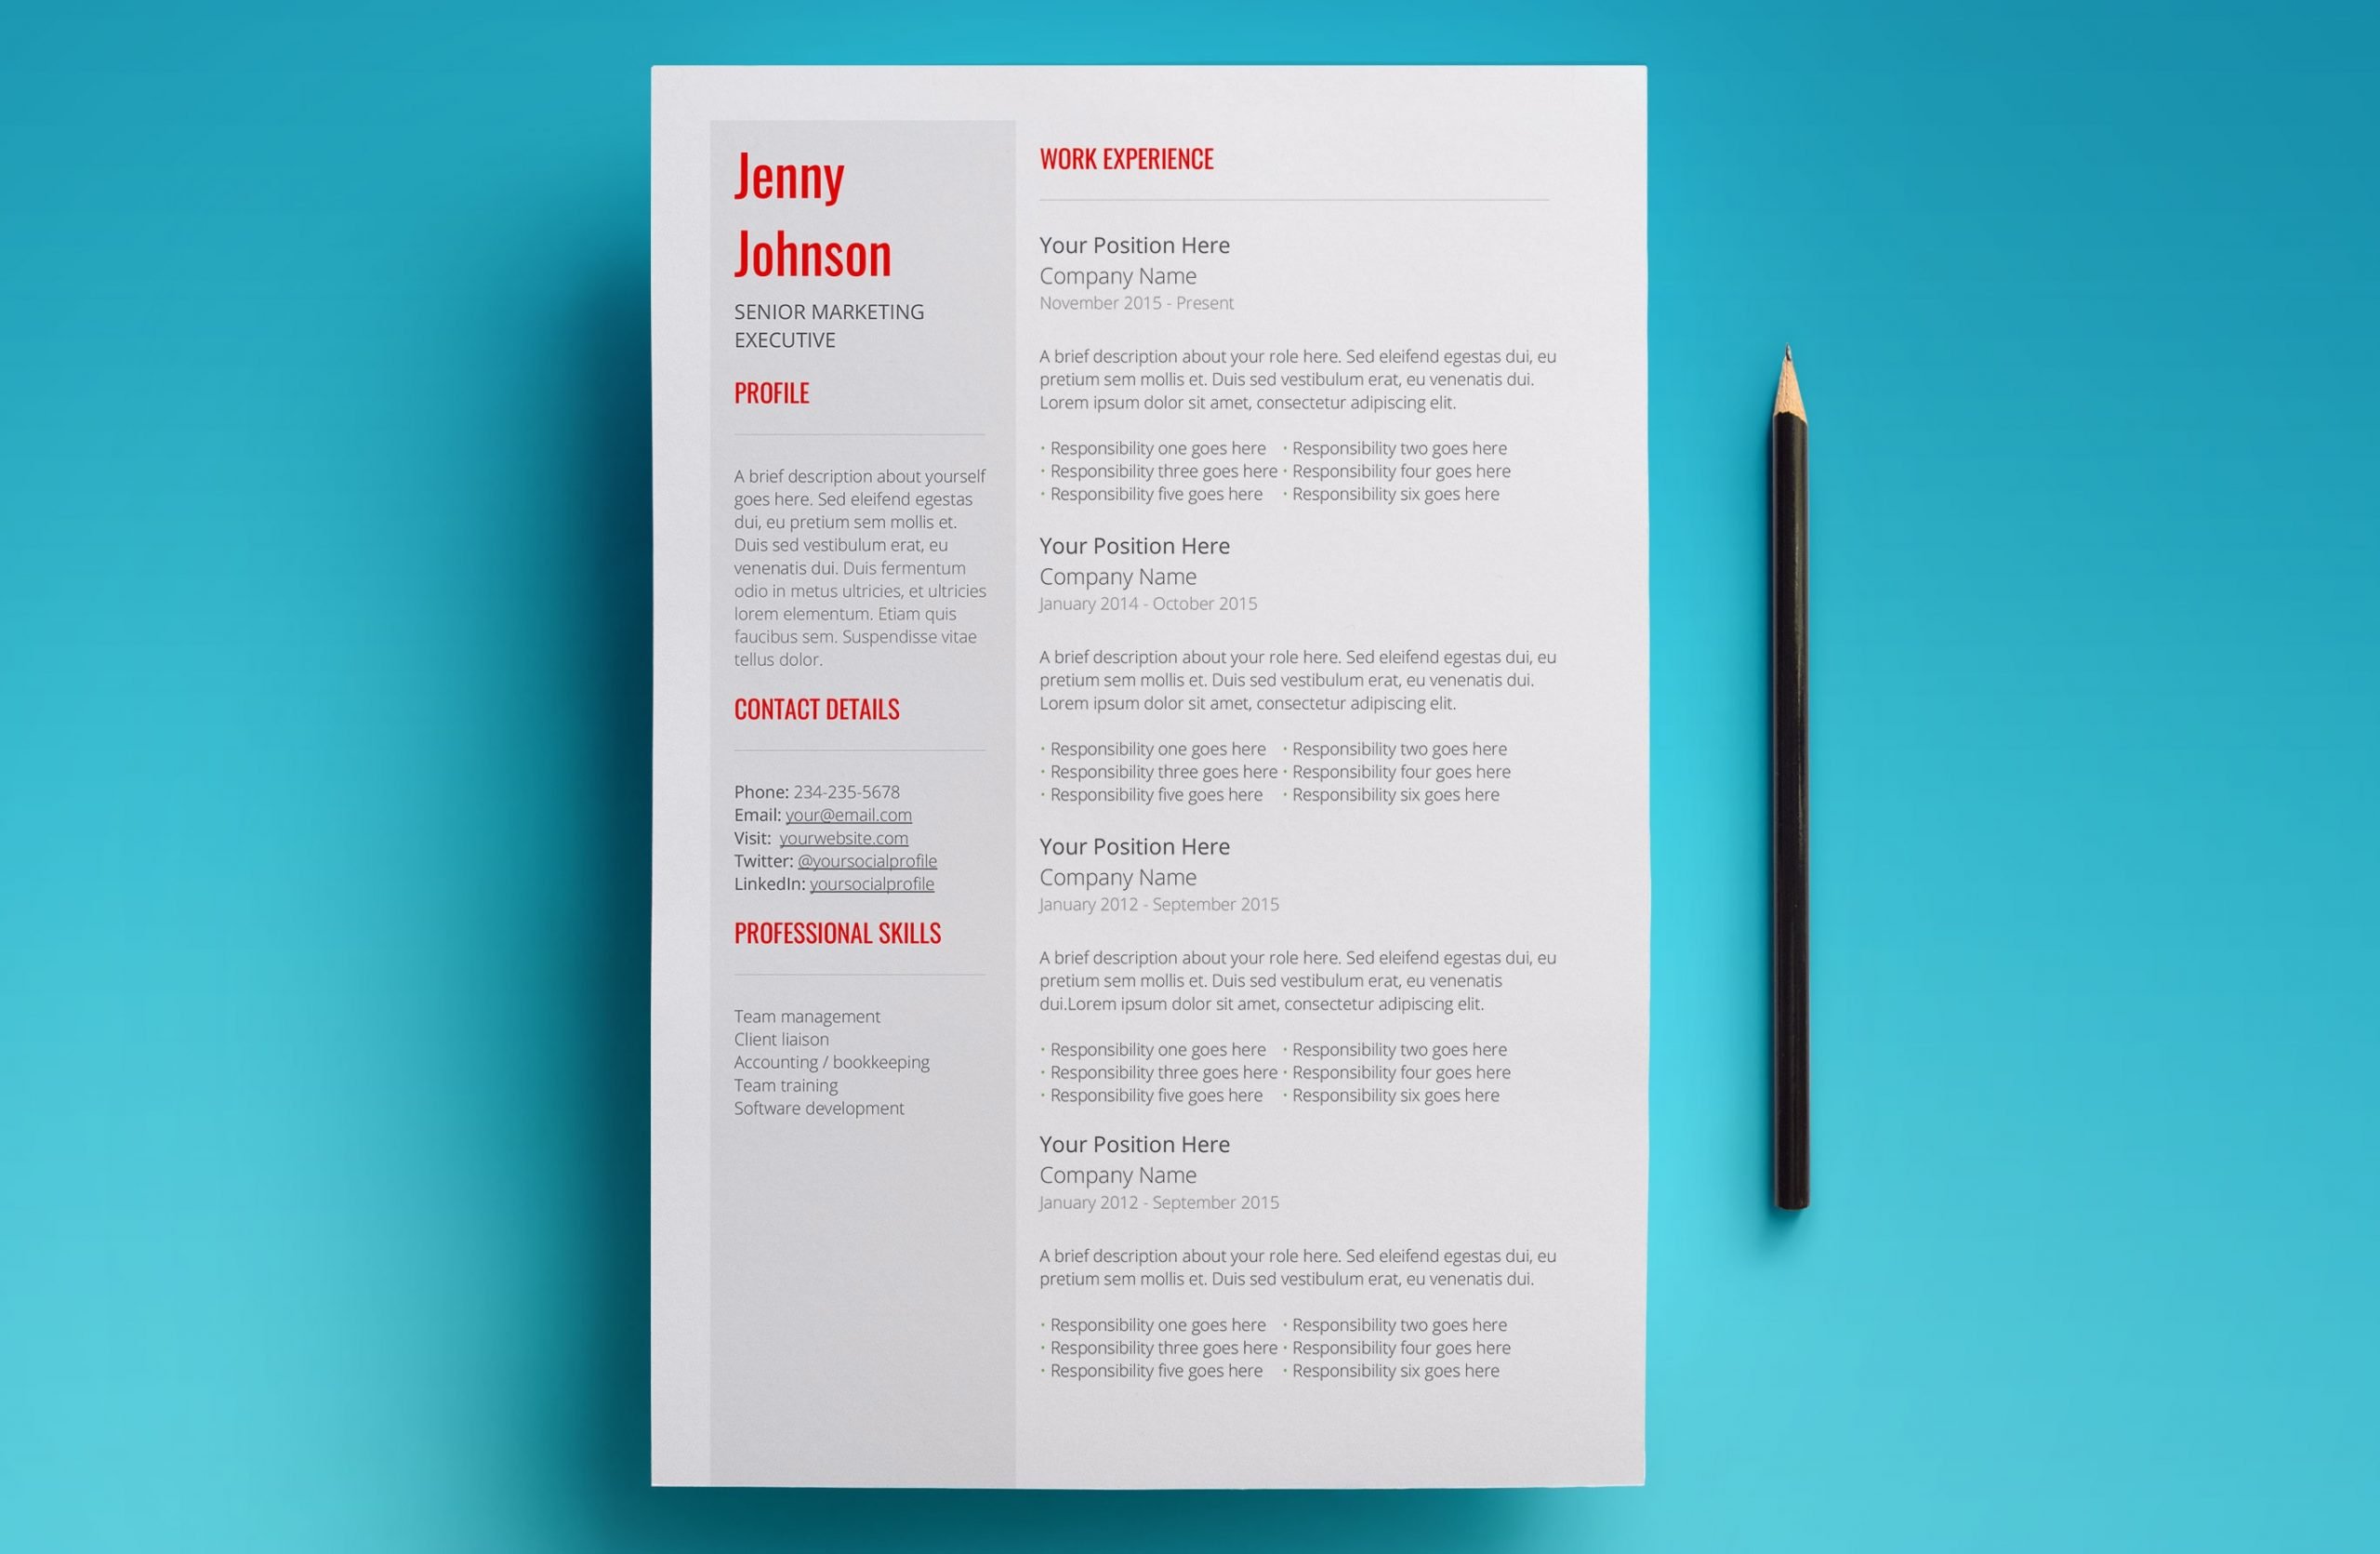 venus resume template page 1